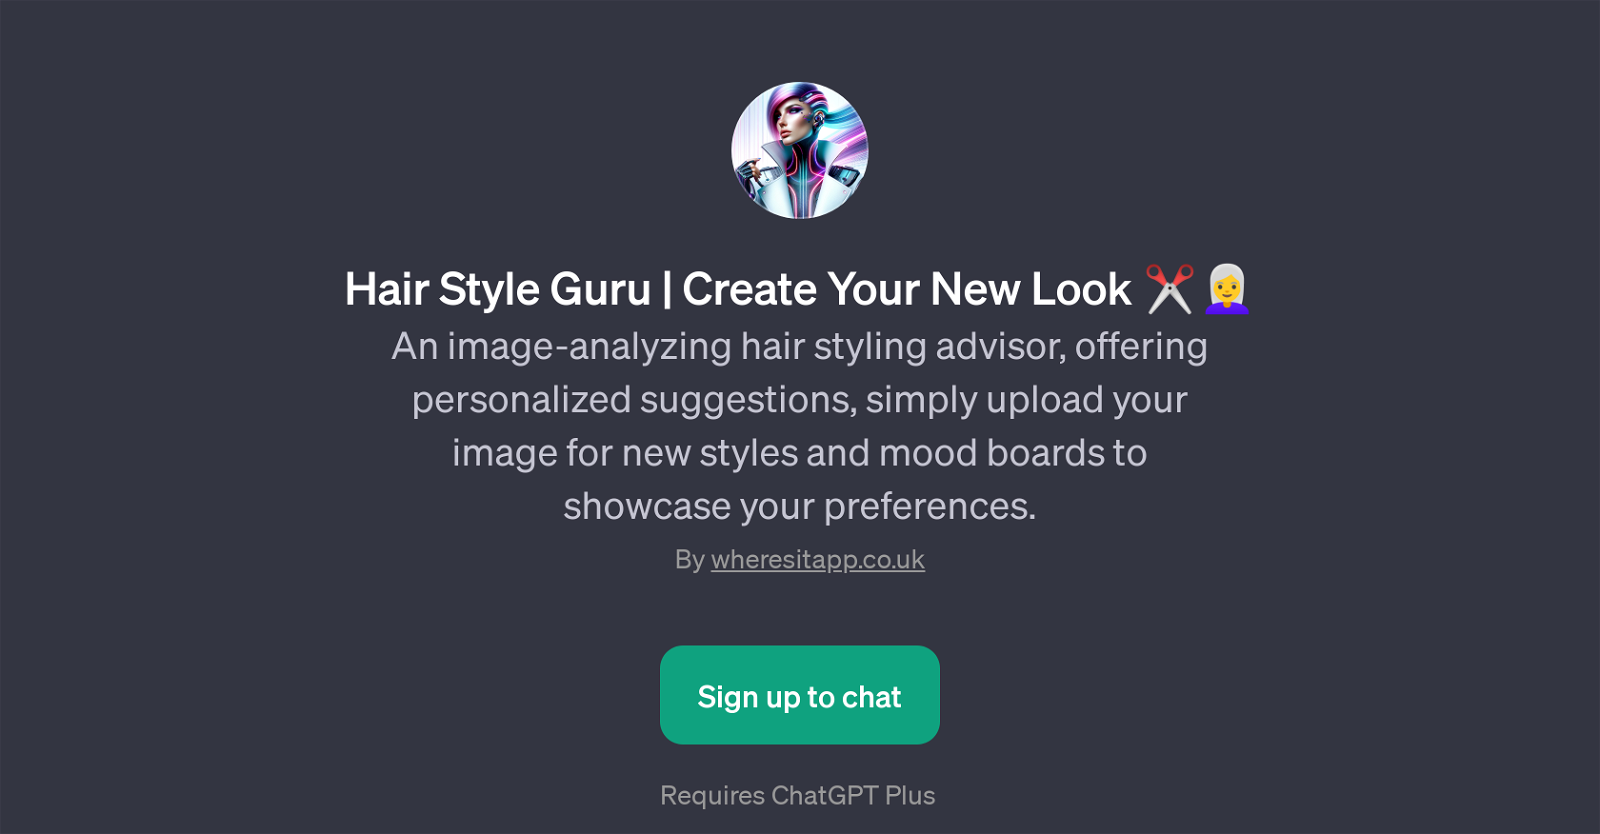 Hair Style Guru website